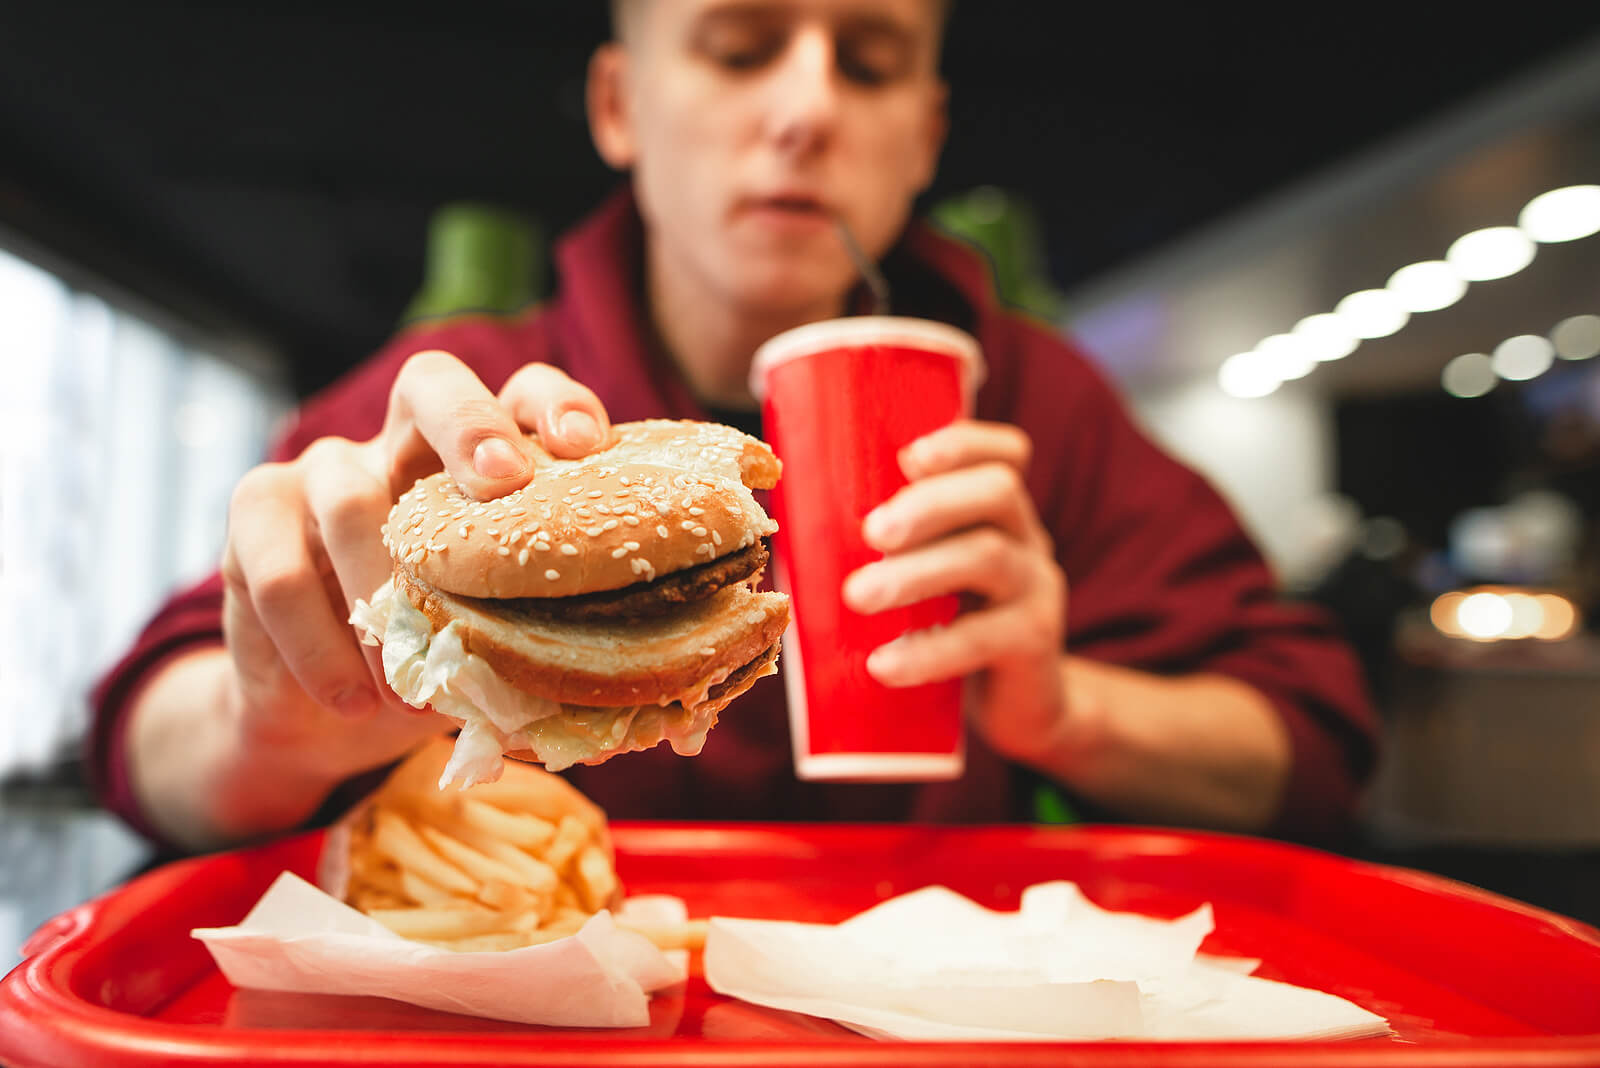 Adolescente comiendo una hamburguesa en una cadena de fast food.